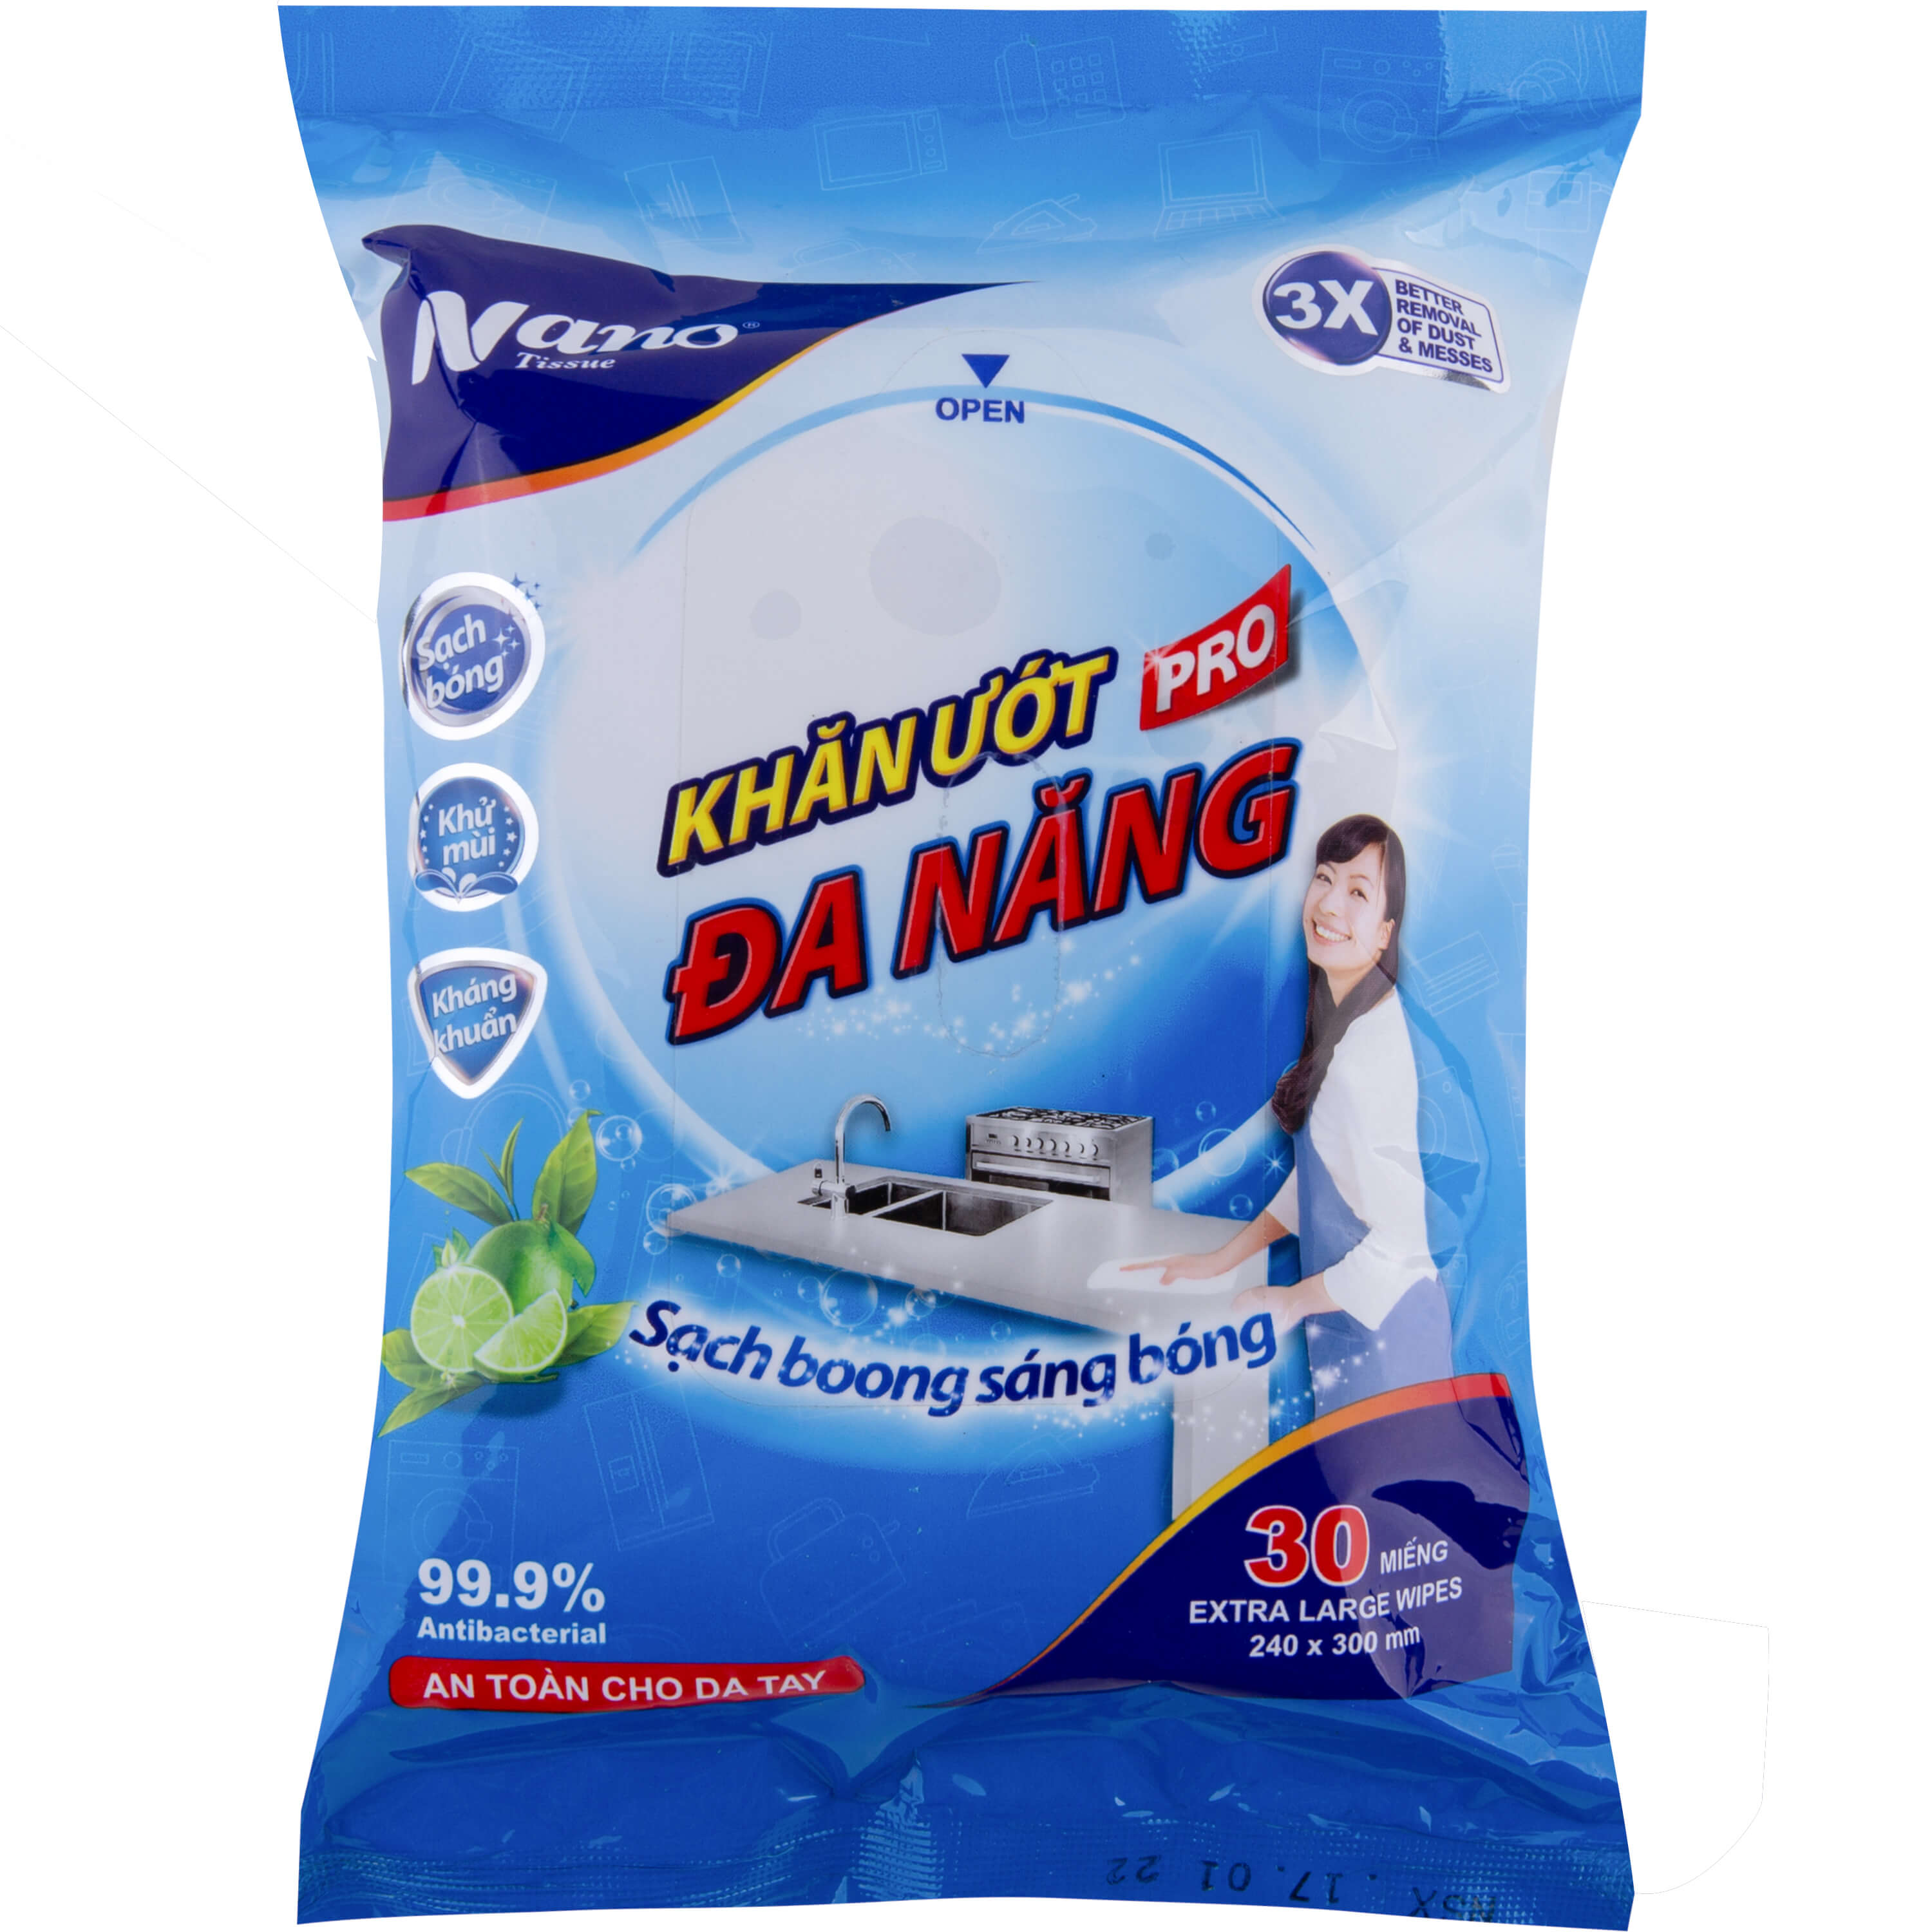 Khăn ướt đa năng Nano gói 30 miếng, lau dọn nhà cửa tiện dụng, không hại da tay, có mùi thơm chanh trà xanh - Nano Tissue